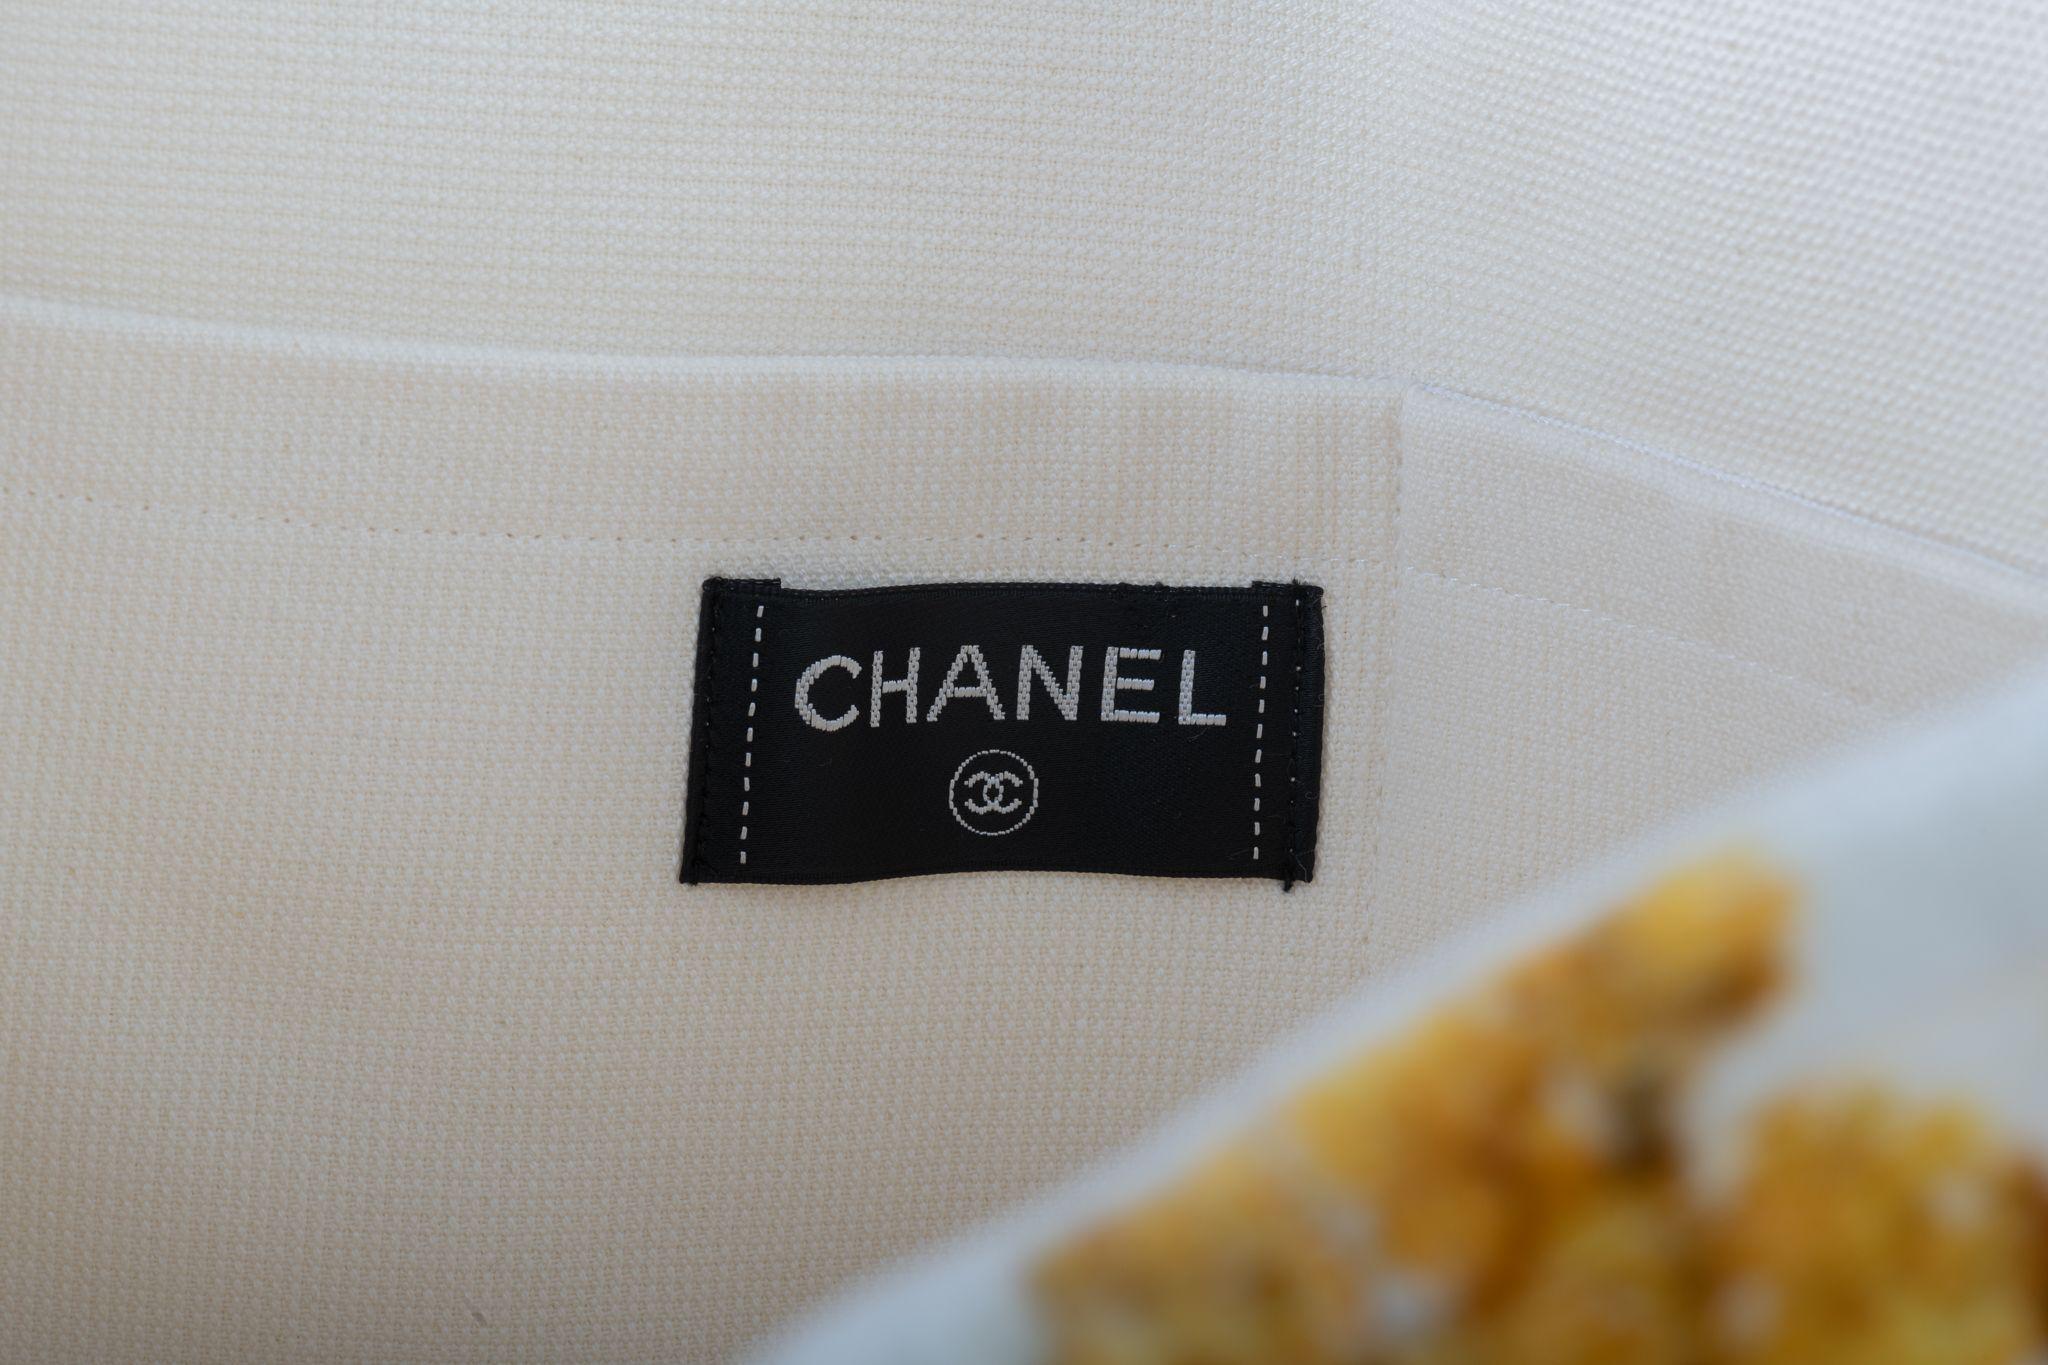 Chanel Paris Griechenland 2017 Resort Kollektion Frottee Strandtasche. Weiß und Gold. 2 kleine Innentaschen. Griffhöhe 7,5